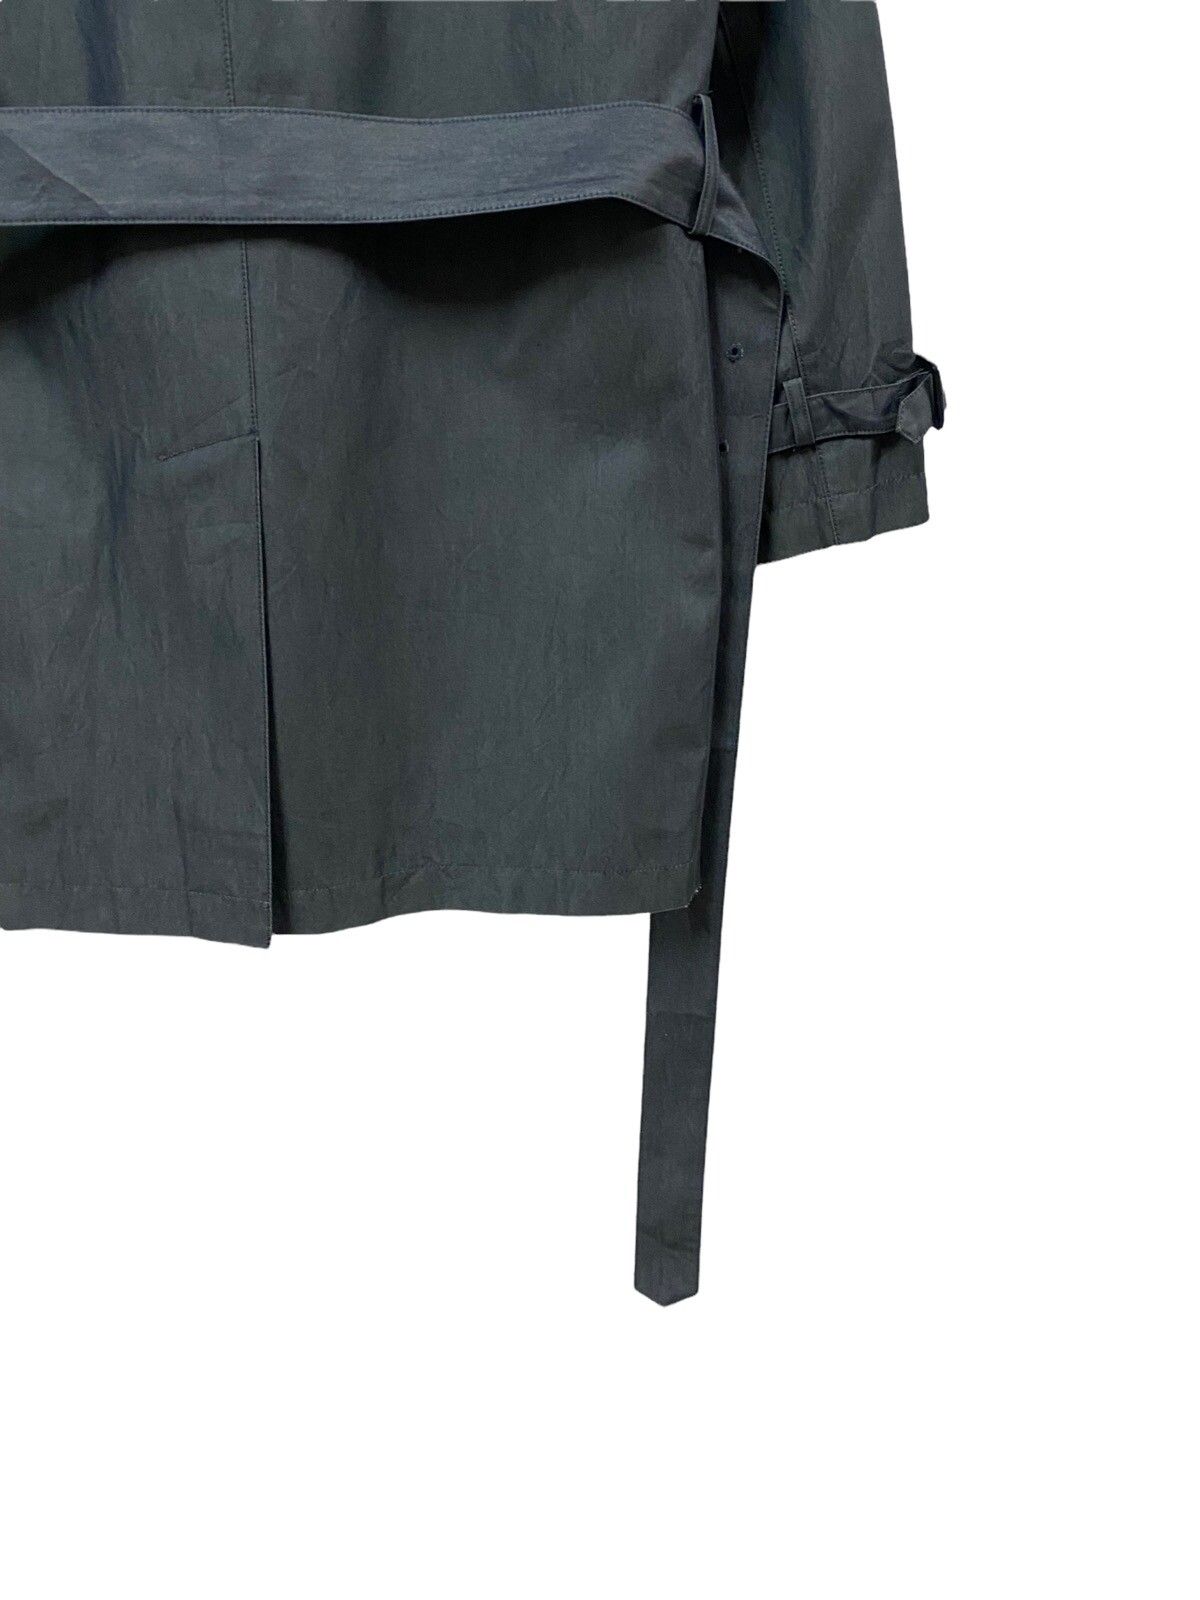 PS Paul Smith Trech Coat Grey Jacket - 14